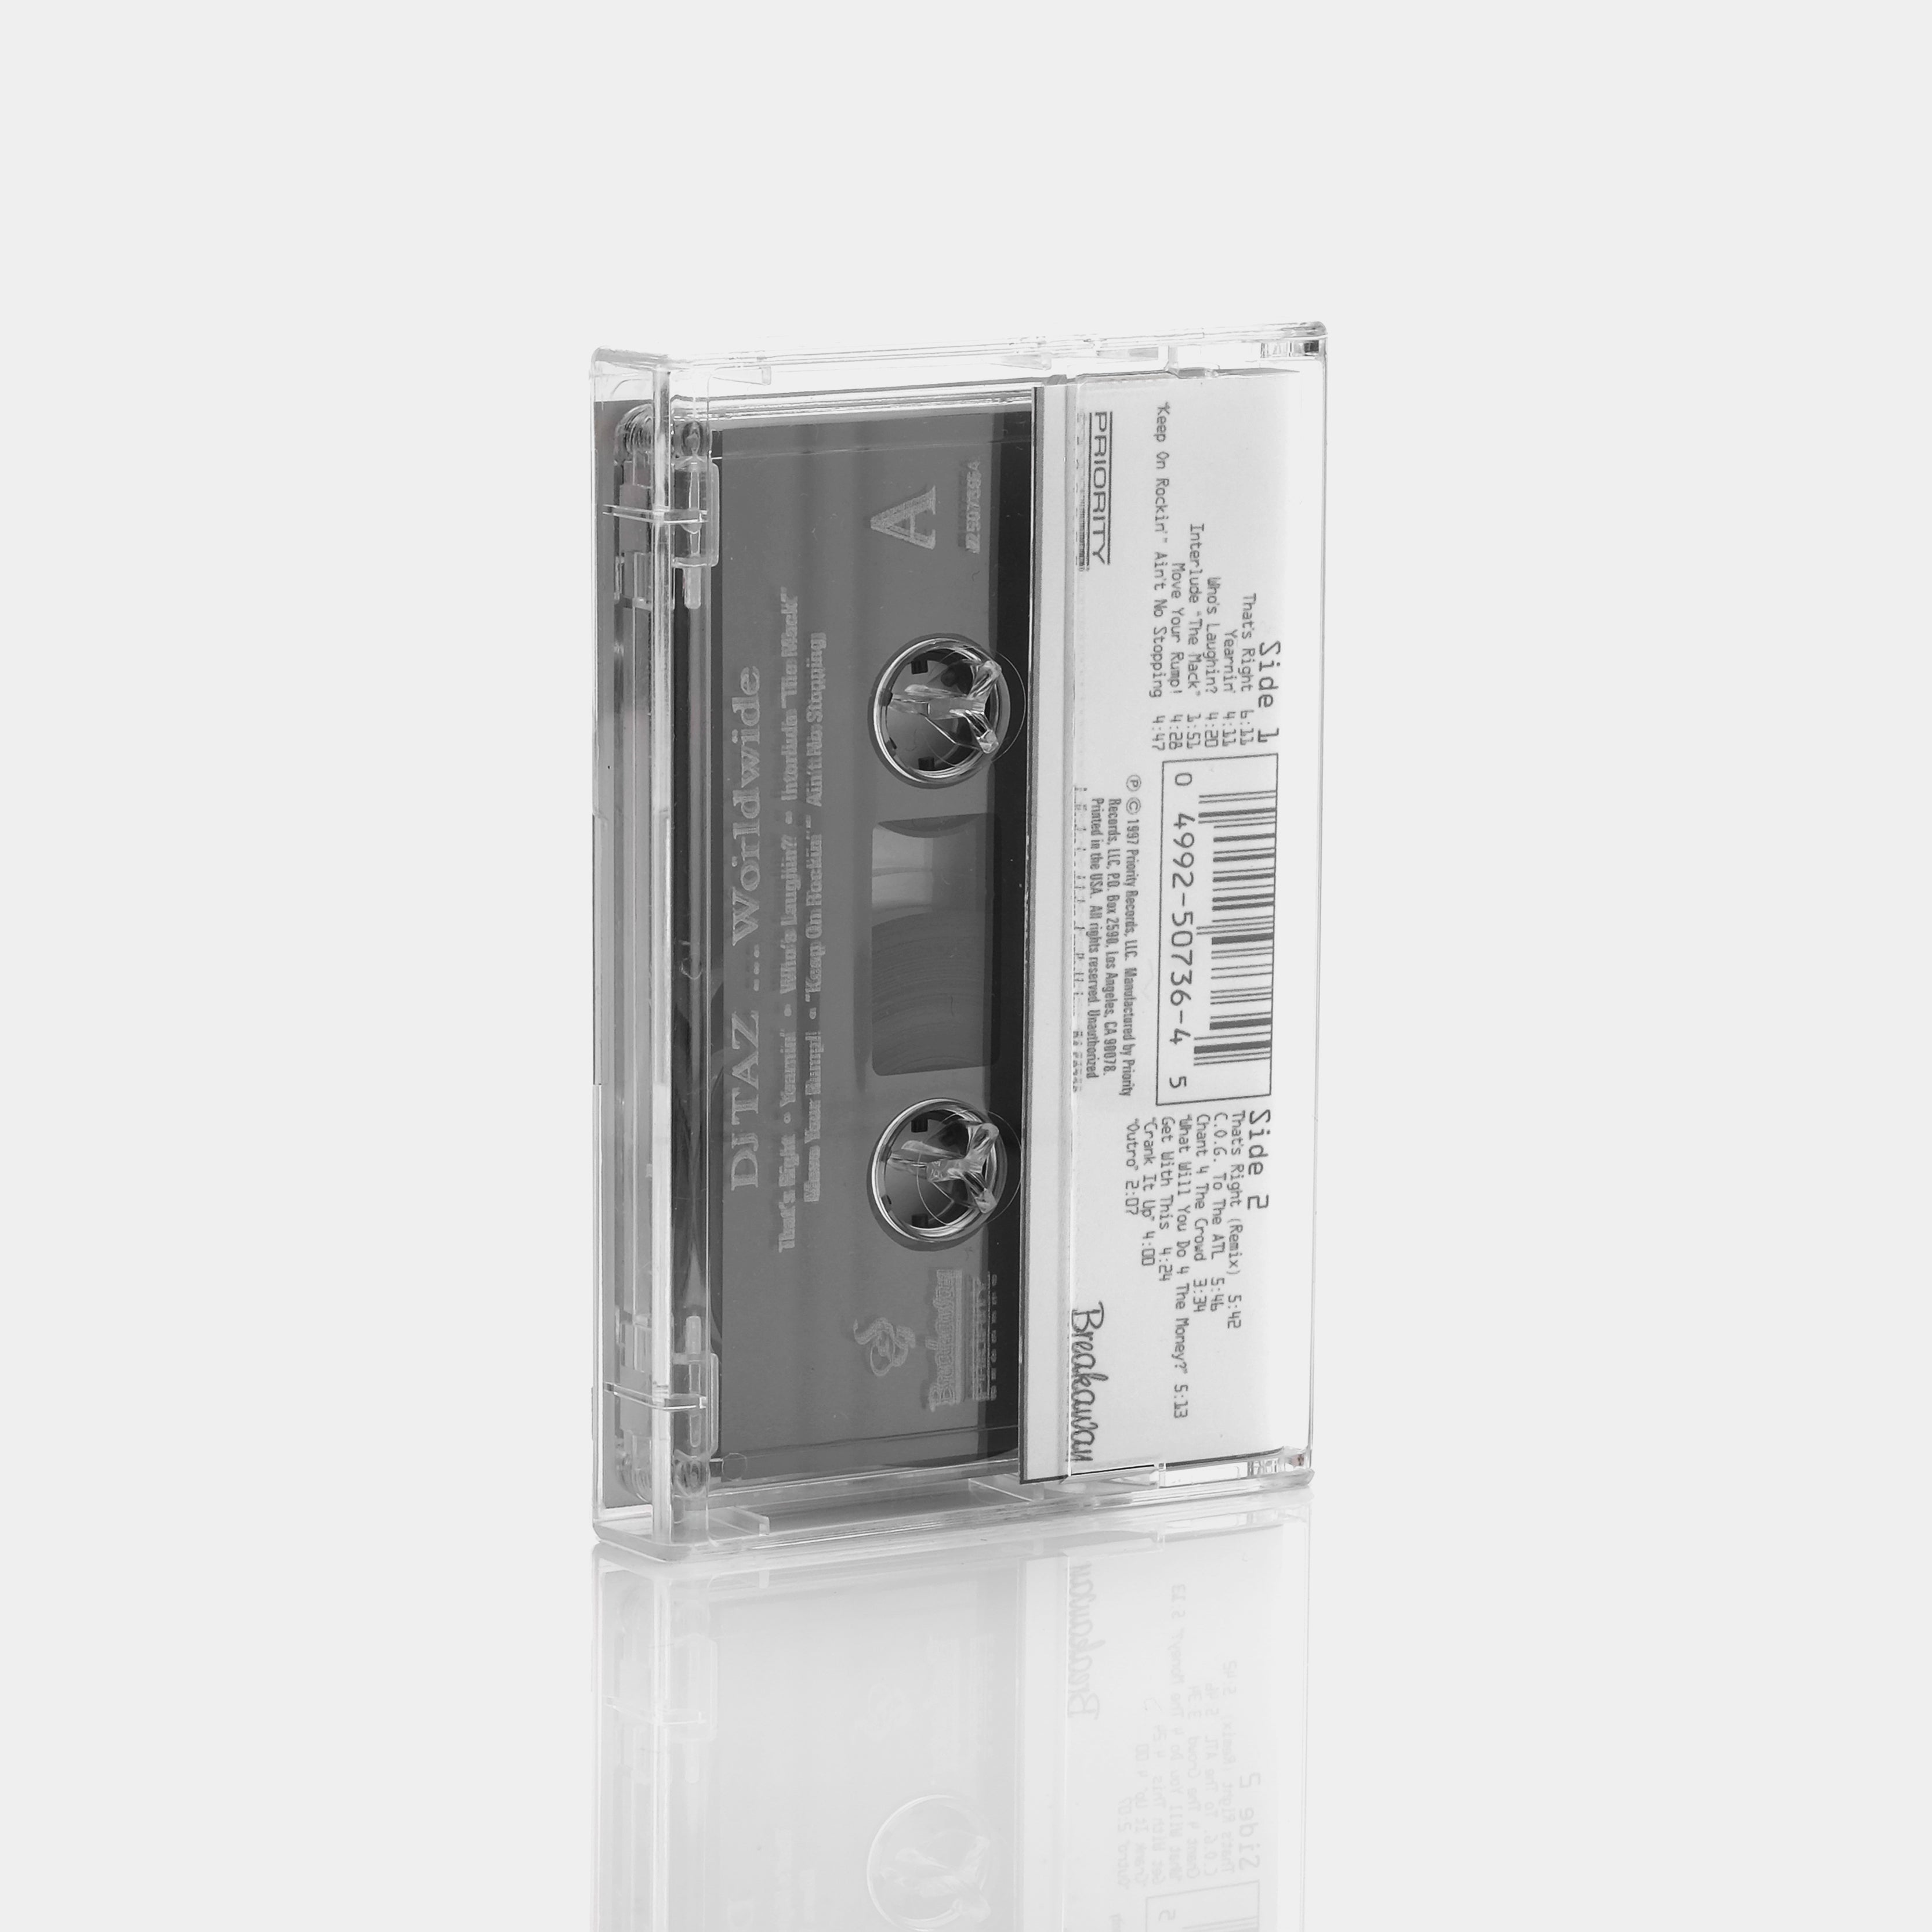 DJ Taz - Worldwide Cassette Tape